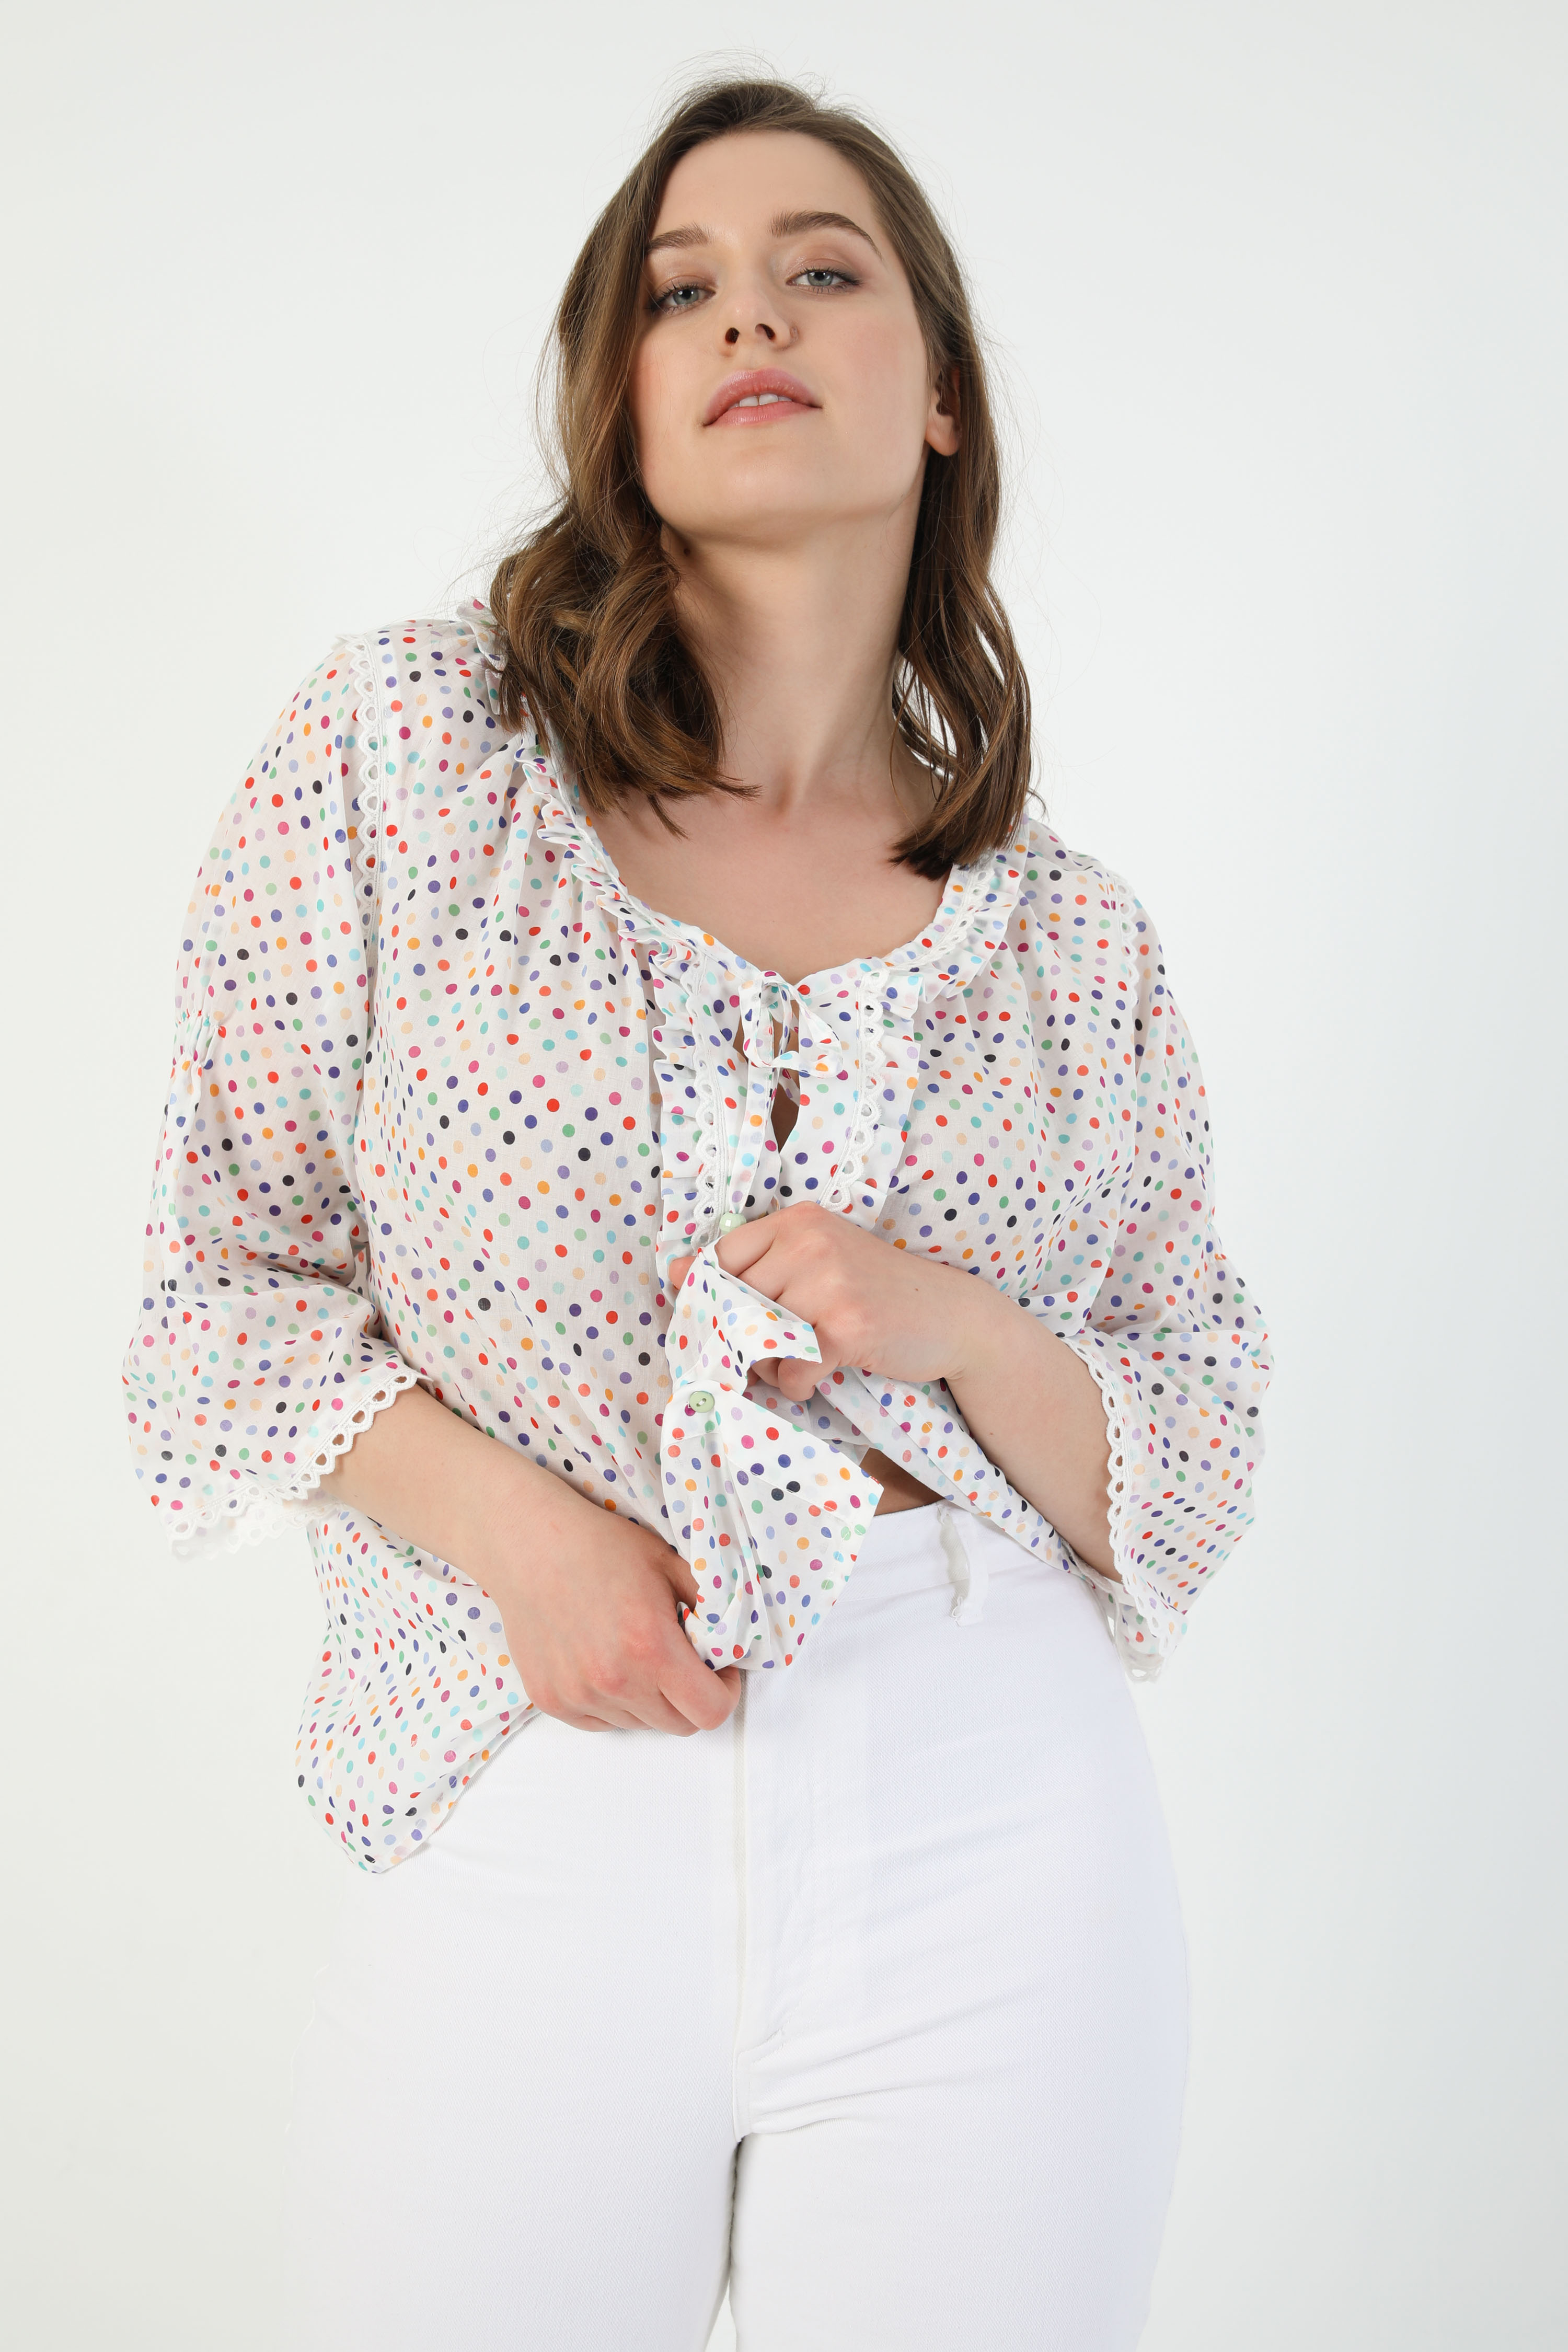 Multicolored polka-dot cotton veil shirt (shipping May 5/10)